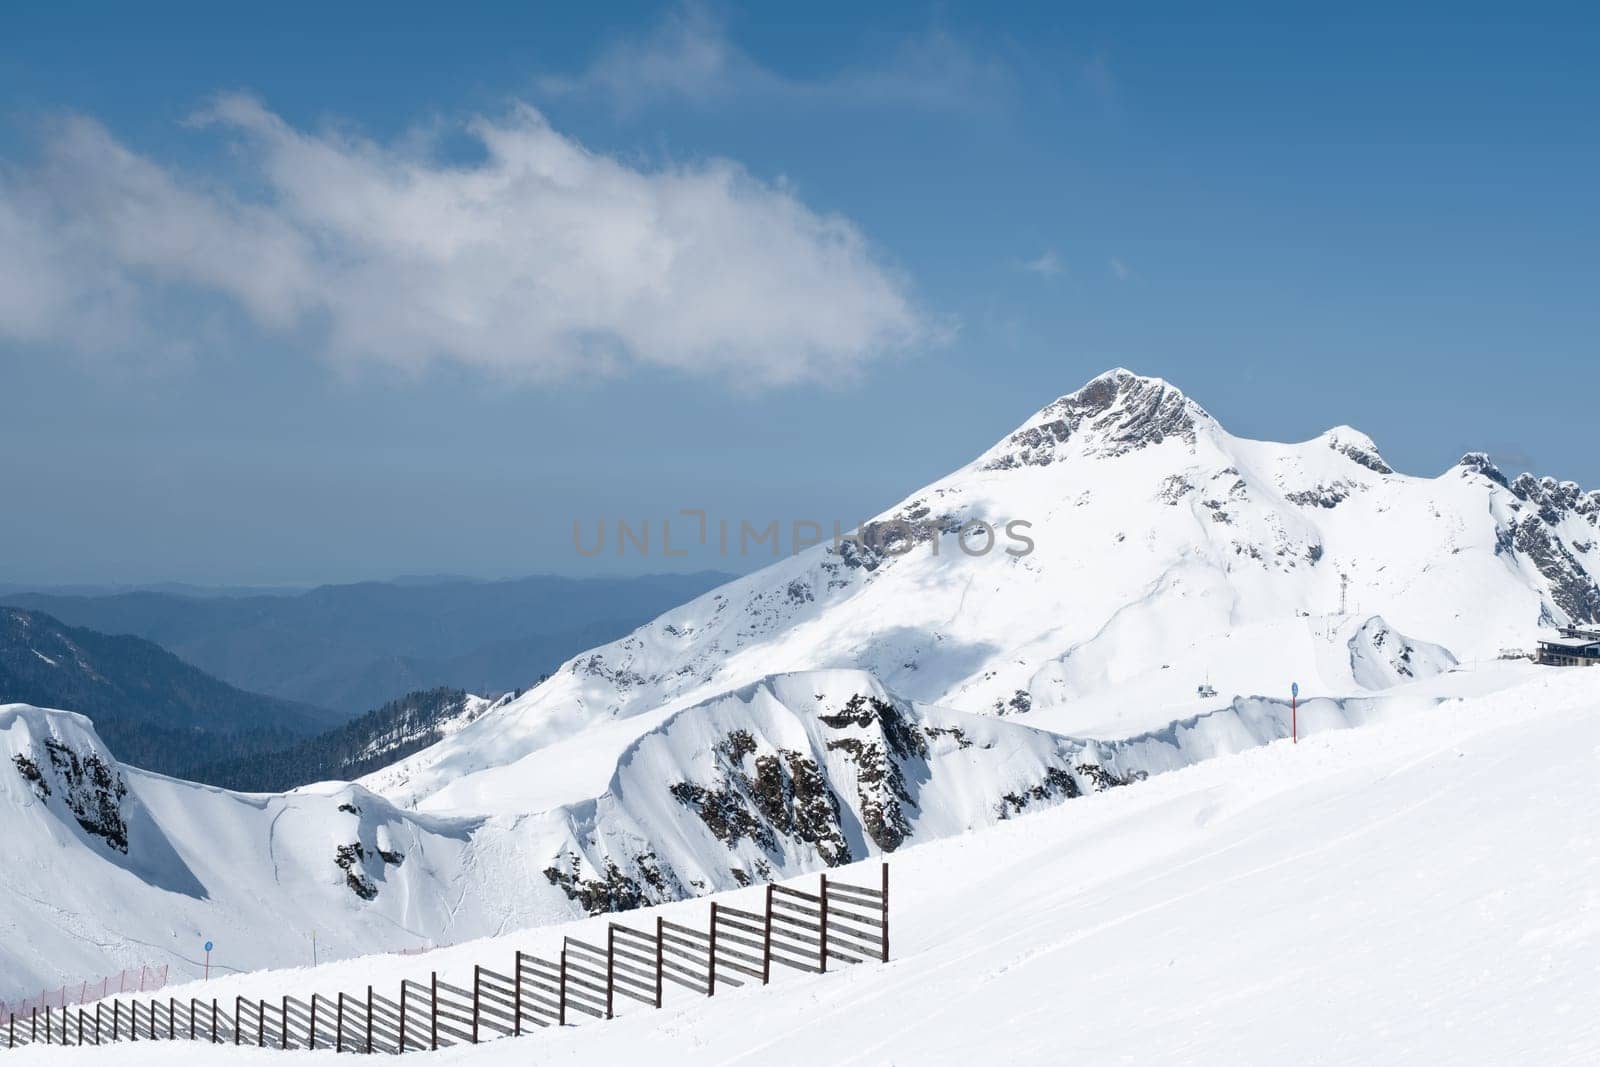 Ski slopes at Rosa Peak, Sochi, Russia by NataliPopova